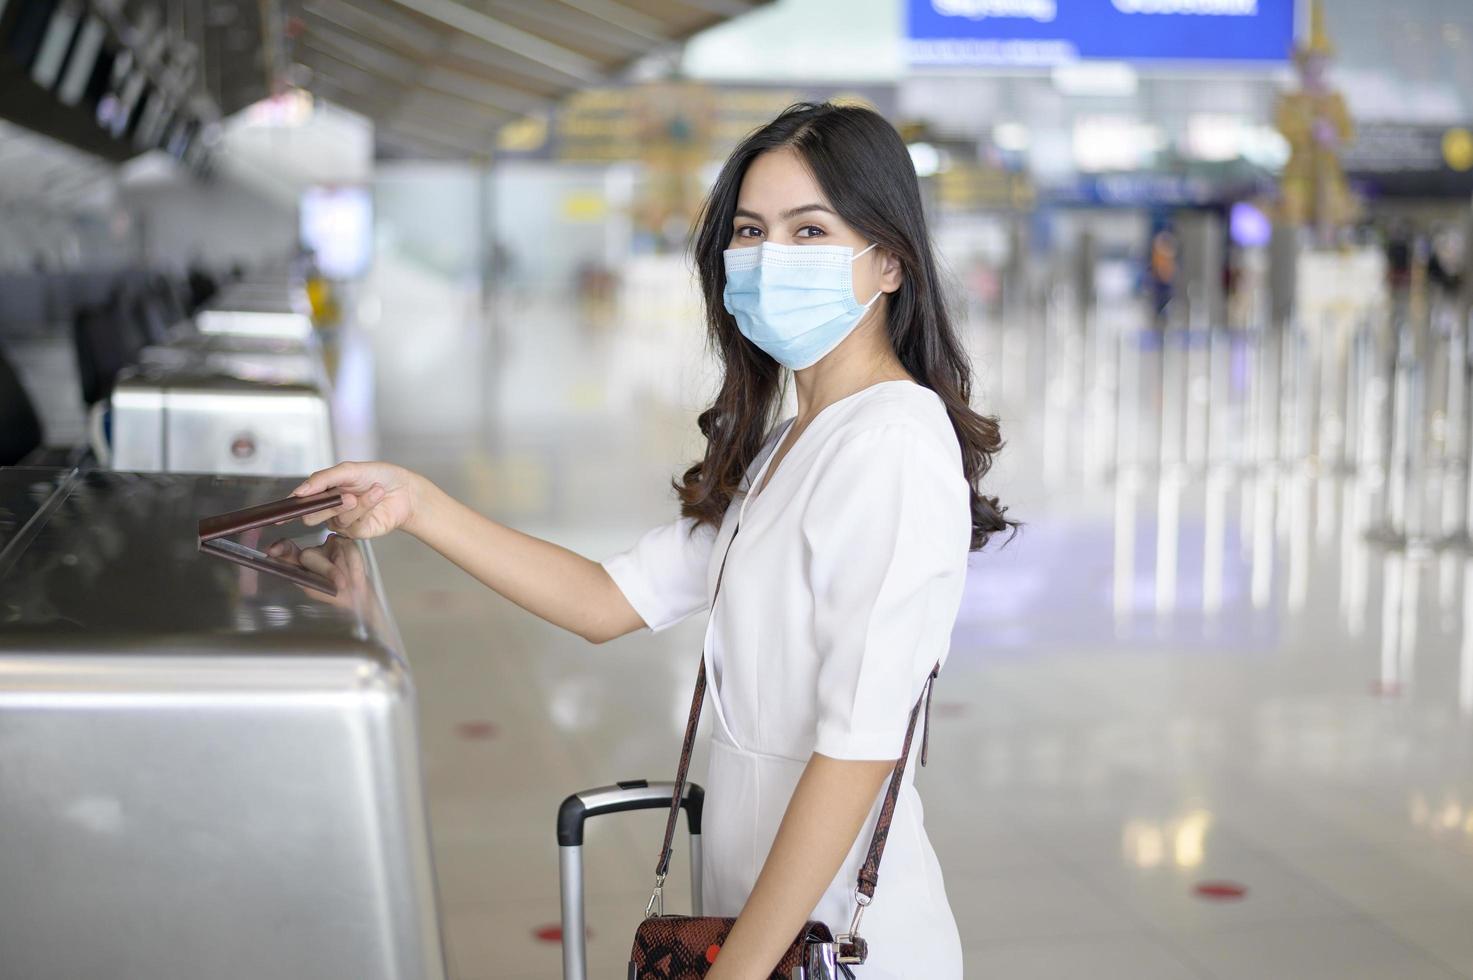 en resenskvinna bär skyddsmask på den internationella flygplatsen, resor under covid-19-pandemin, säkerhetsresor, socialt avståndsprotokoll, nytt normalt resekoncept foto